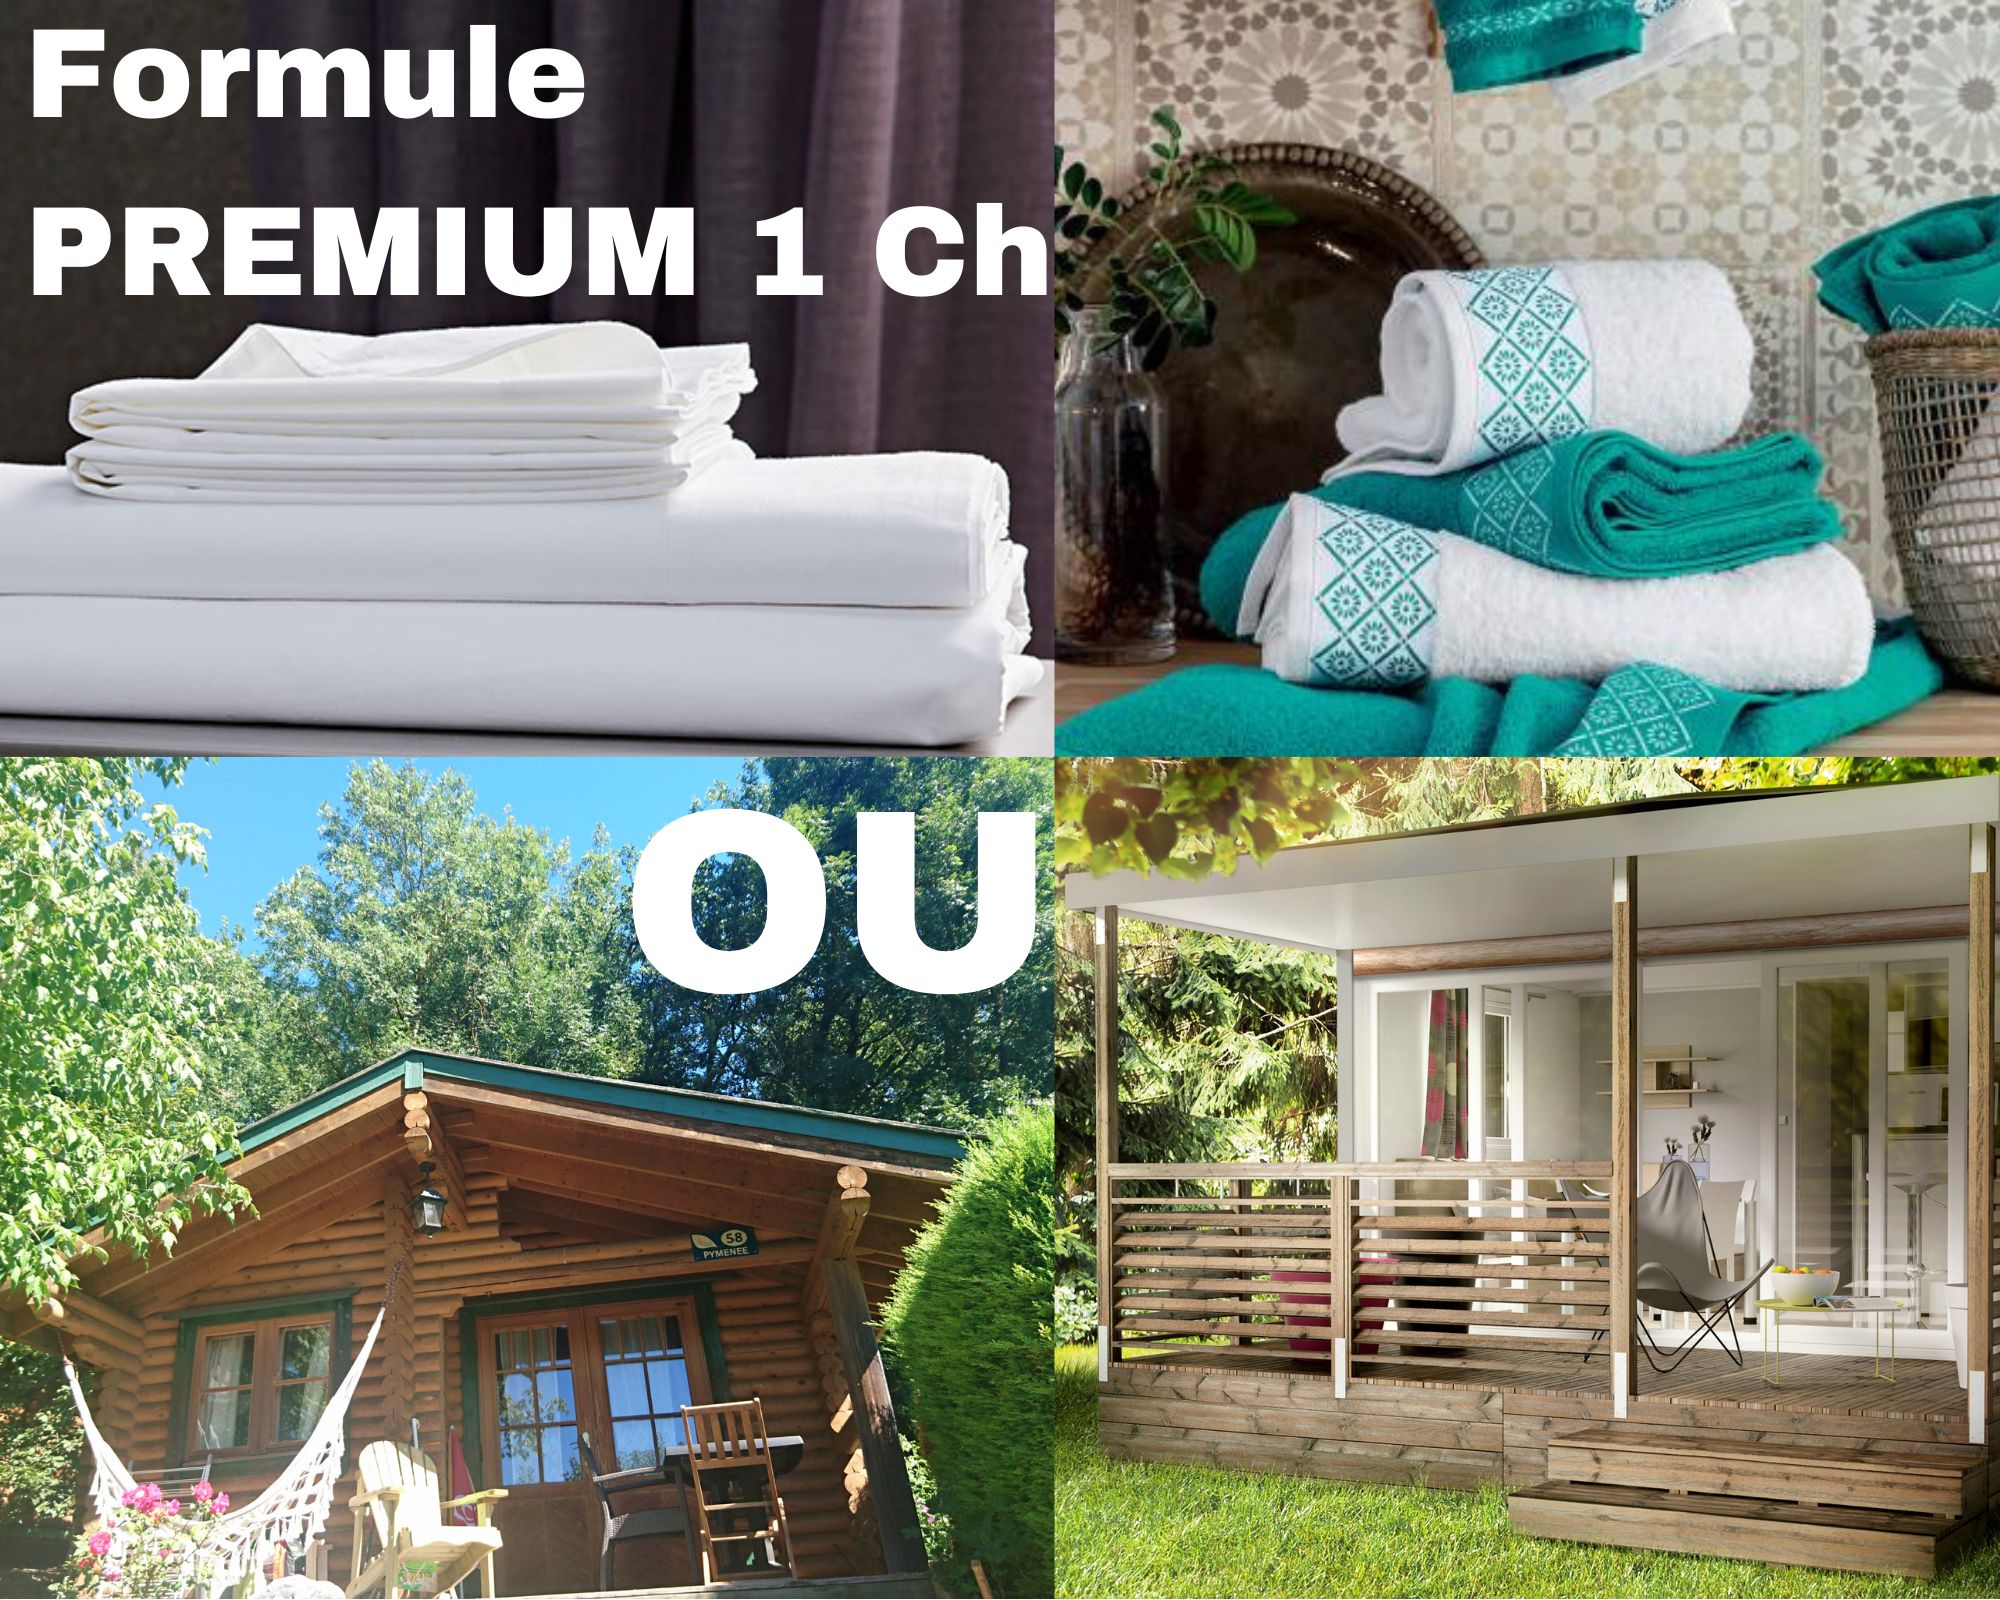 Formule PREMIUM - Chalet ou mobile-home 1 chambres = draps + serviettes +ménage